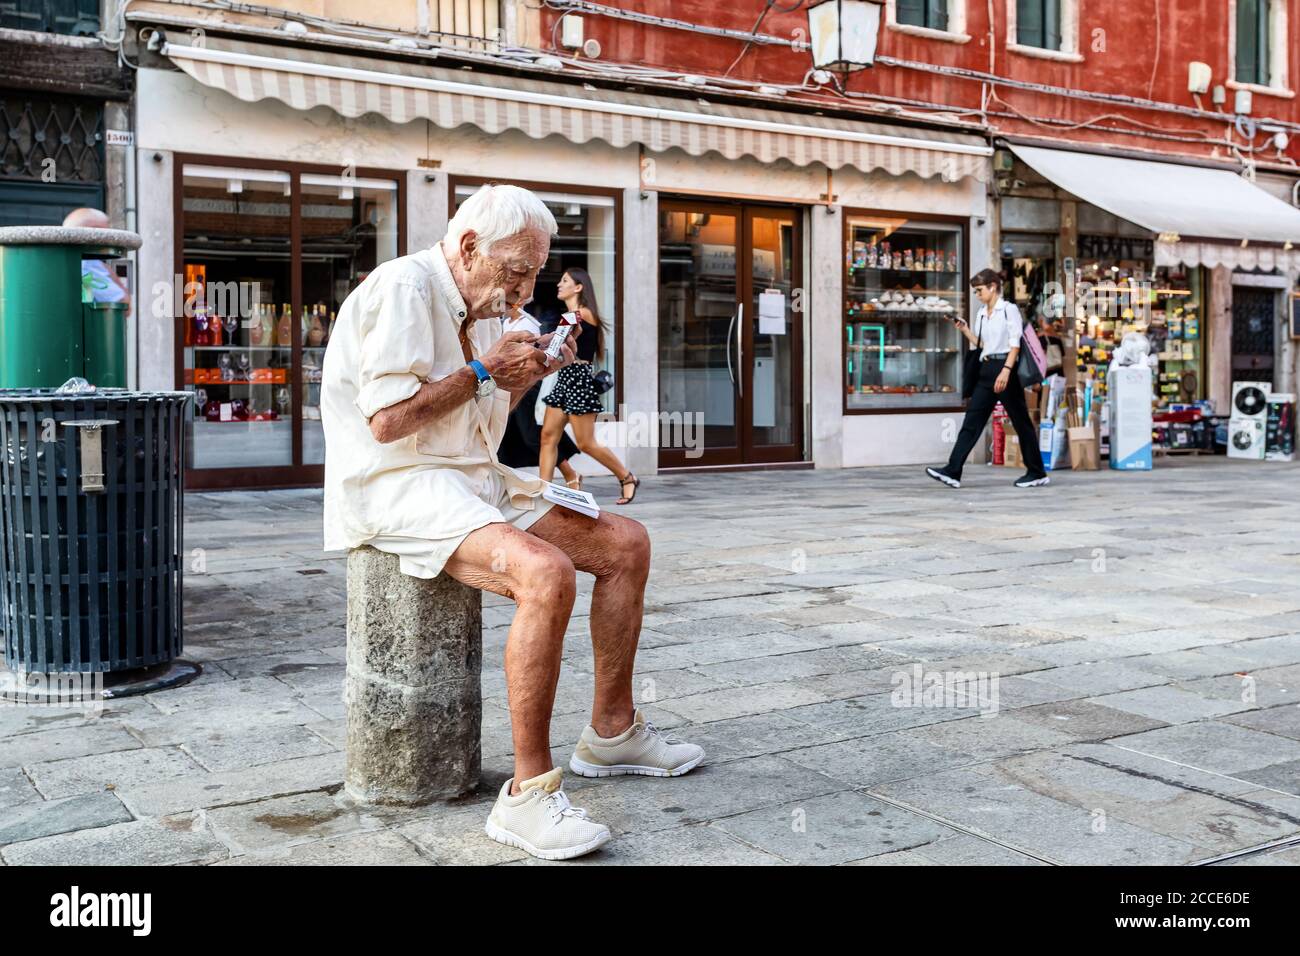 Venezia, Italia - 1 agosto 2020: Un anziano seduto in strada illumina una sigaretta, mentre i turisti passeggiano per il centro della città. Foto Stock